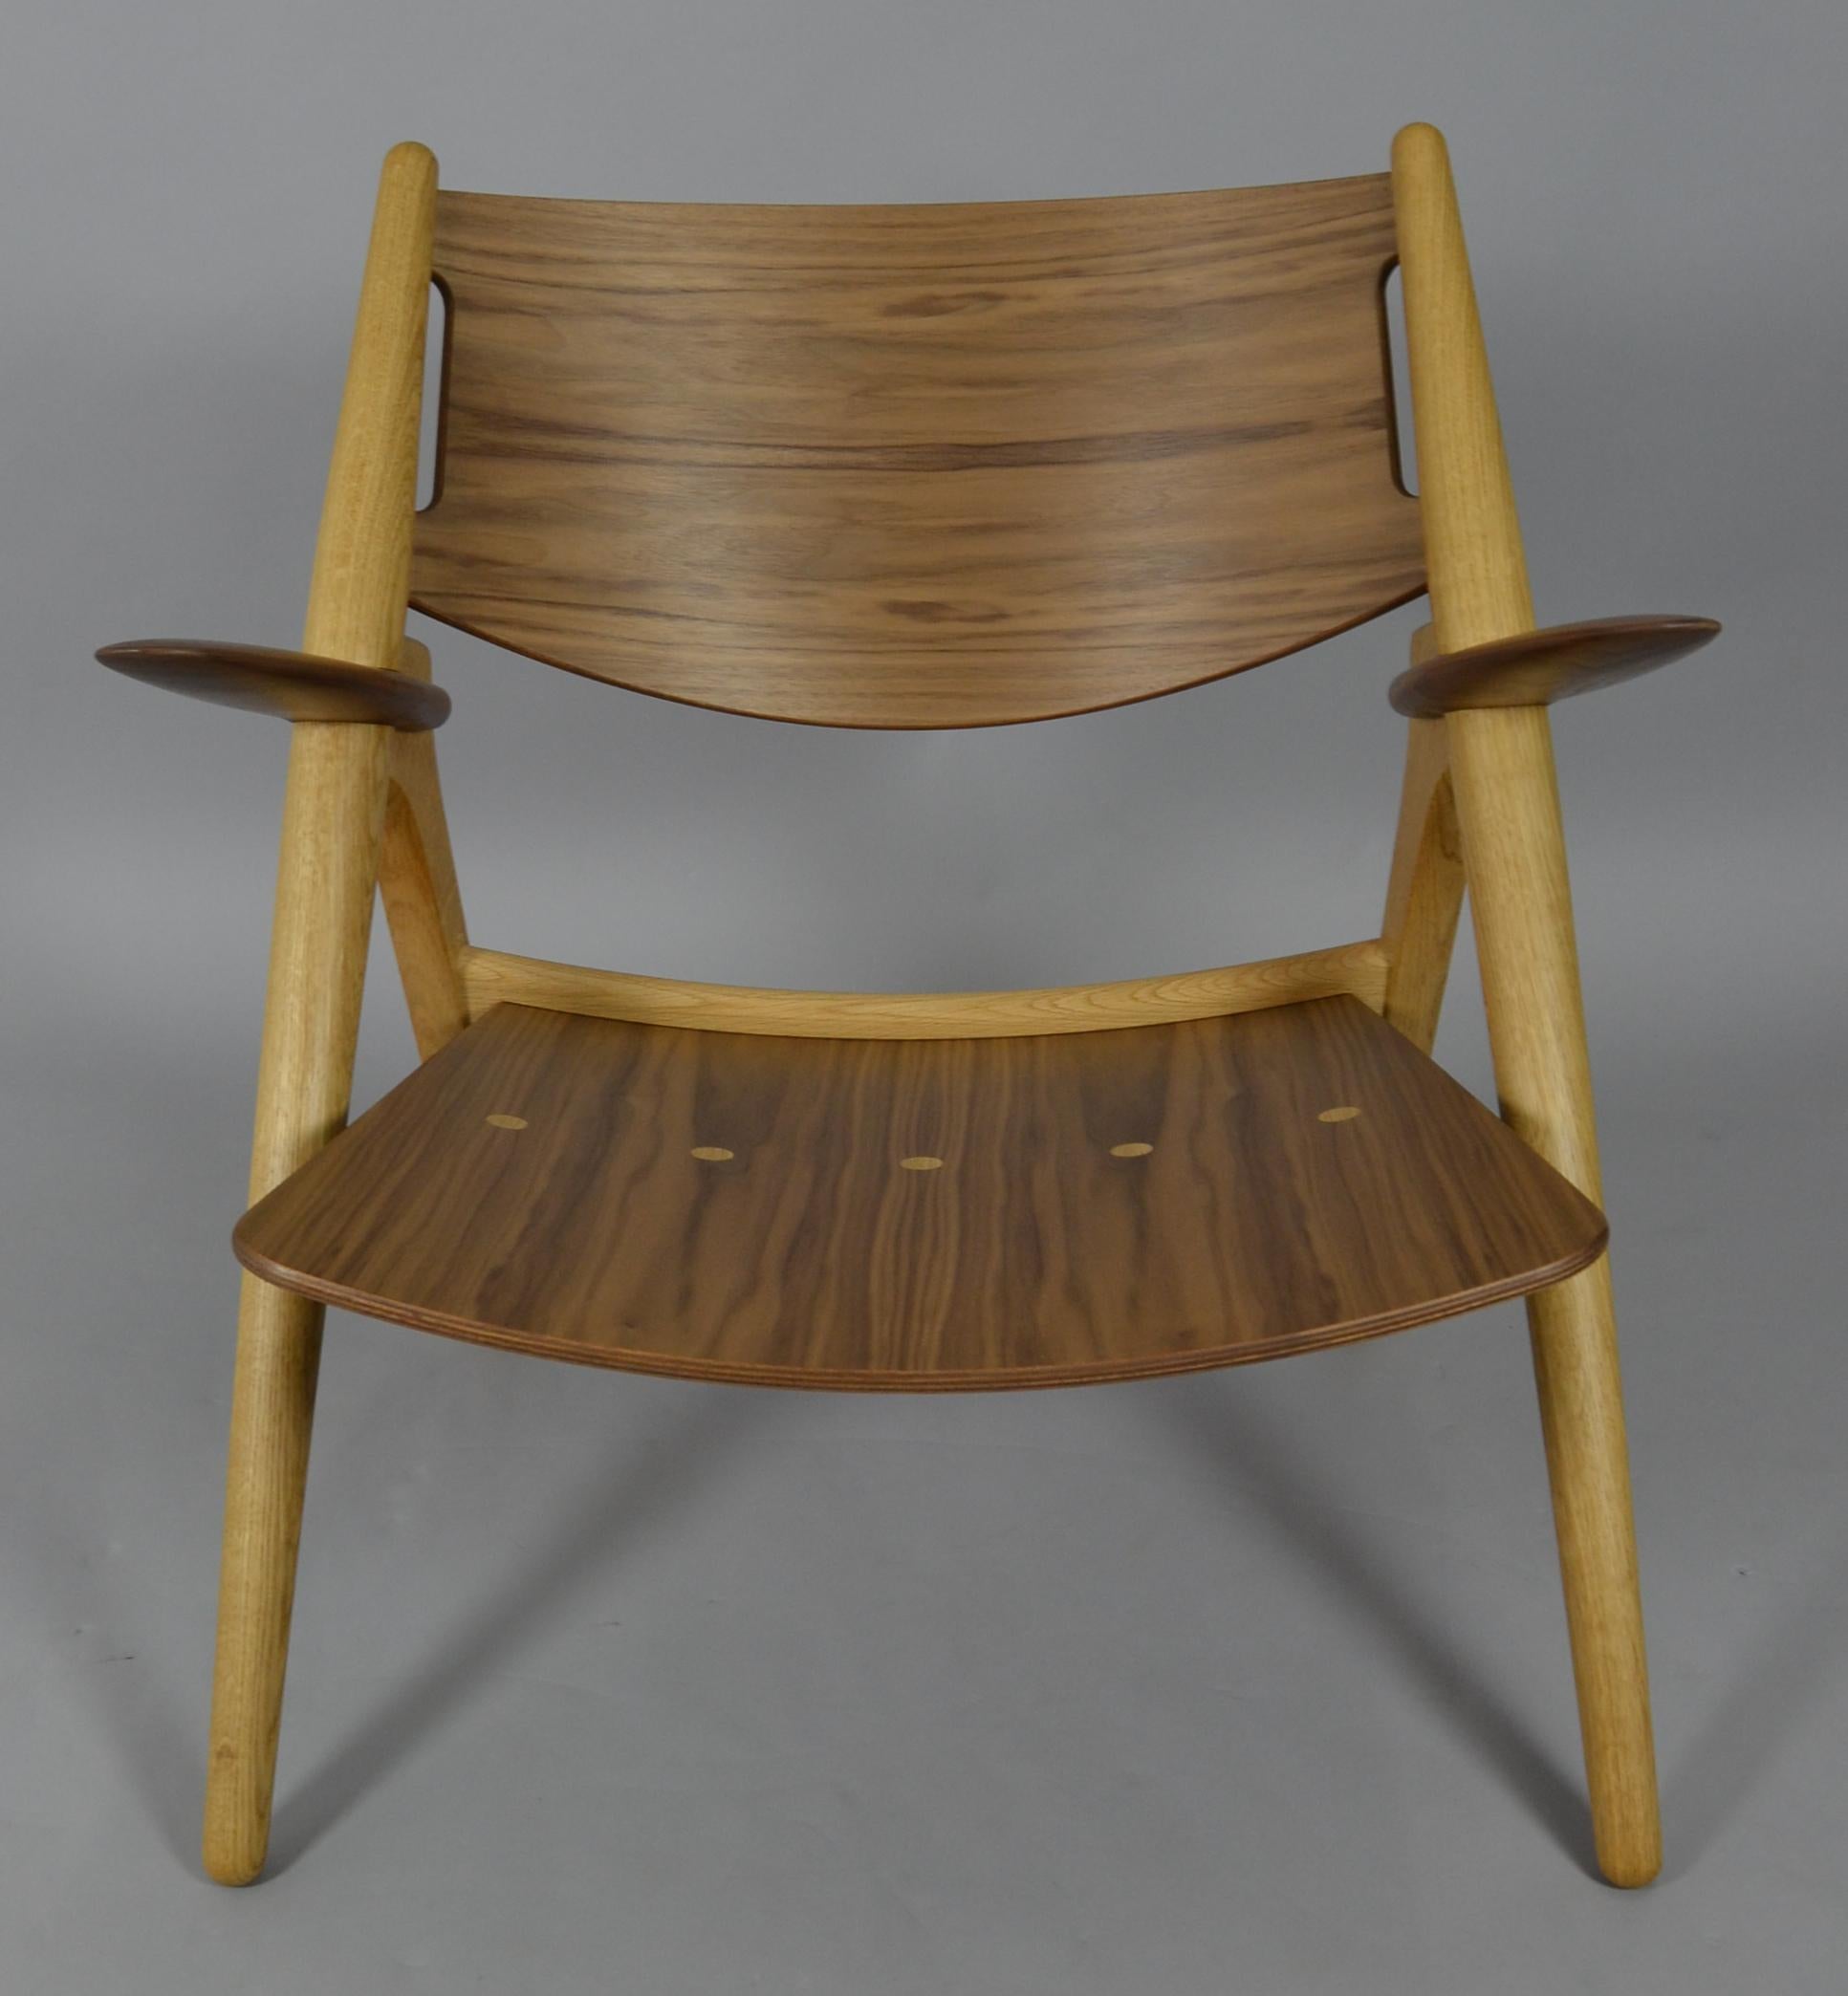 Scandinavian Modern Hans J. Wegner Sawbuck Chair CH28 for Carl Hansen Walnut & Oak